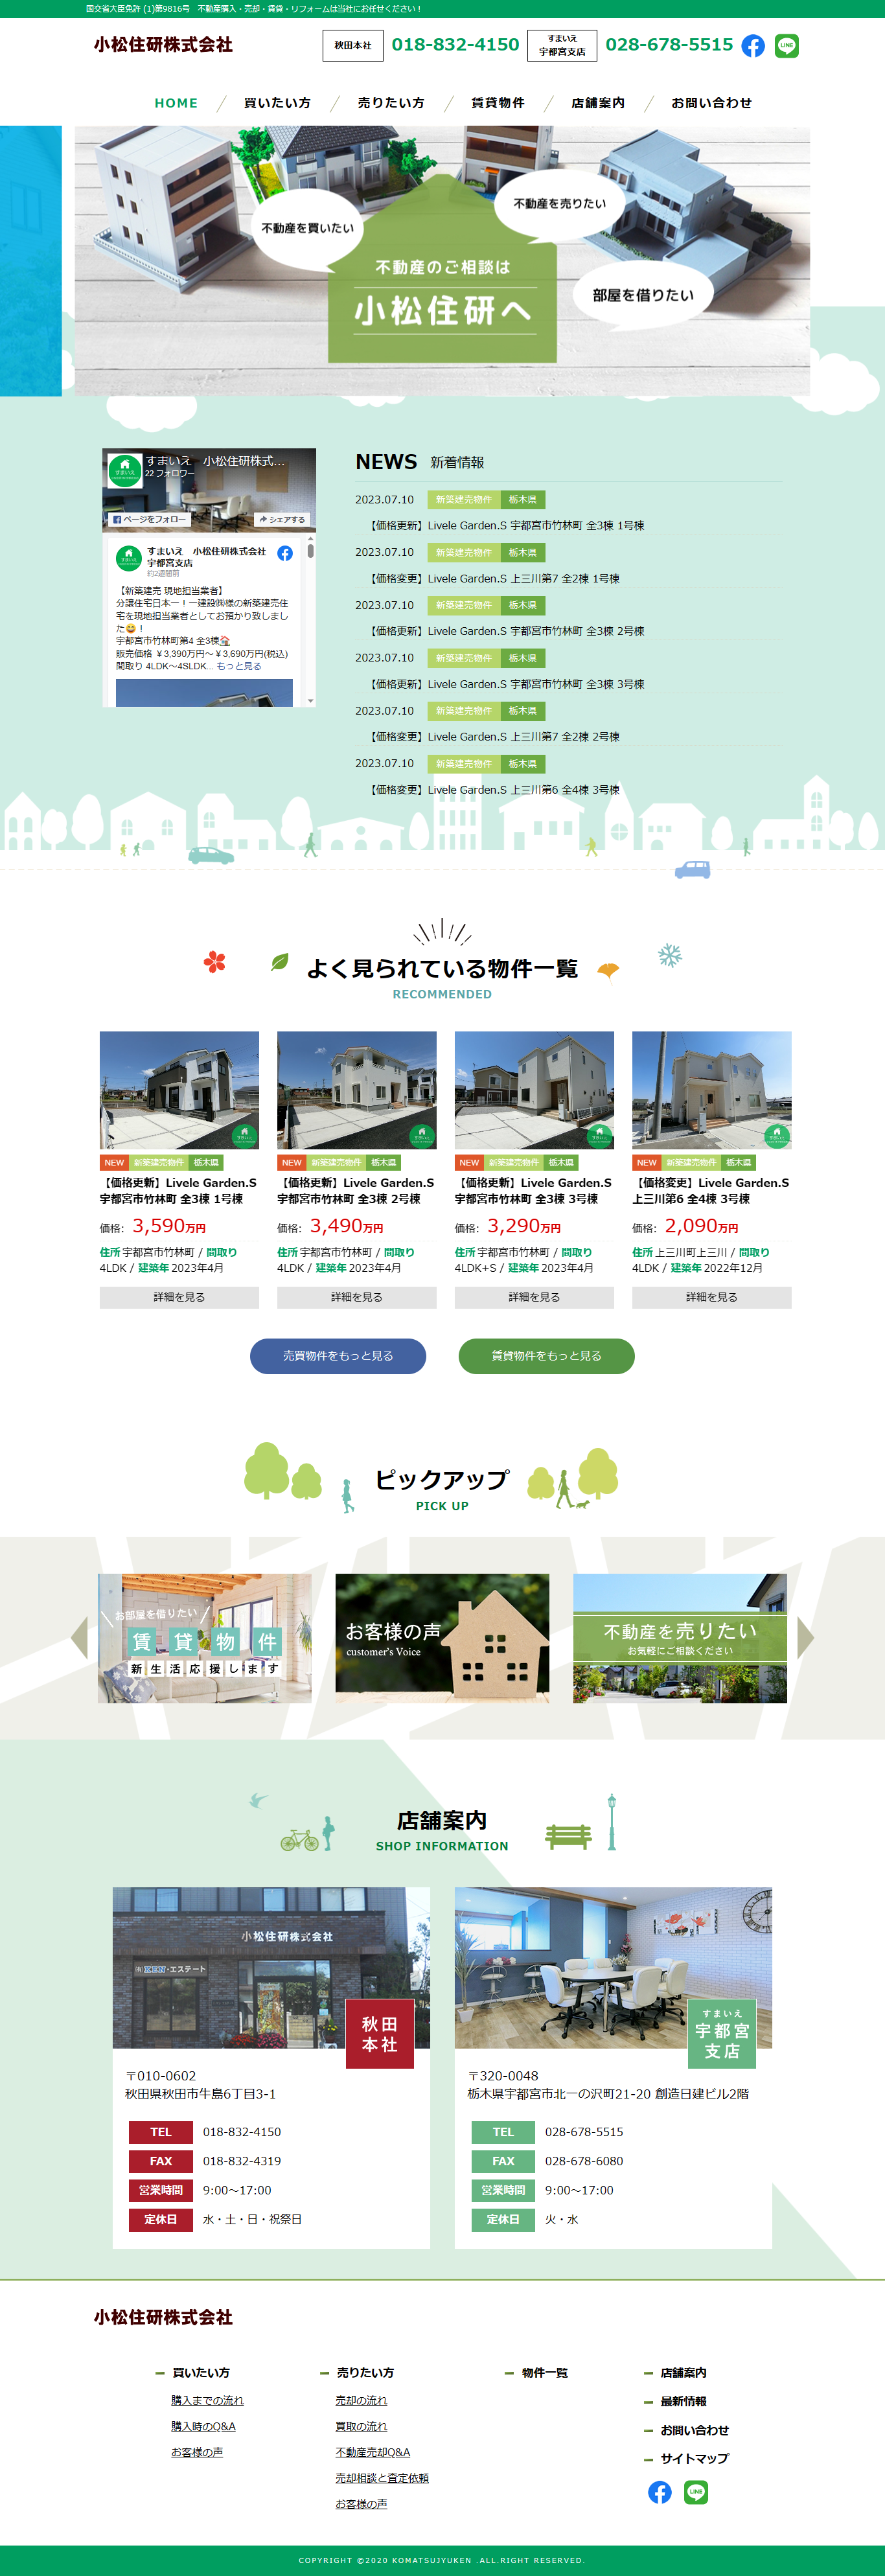 栃木県の不動産会社様の新規ホームページ制作。